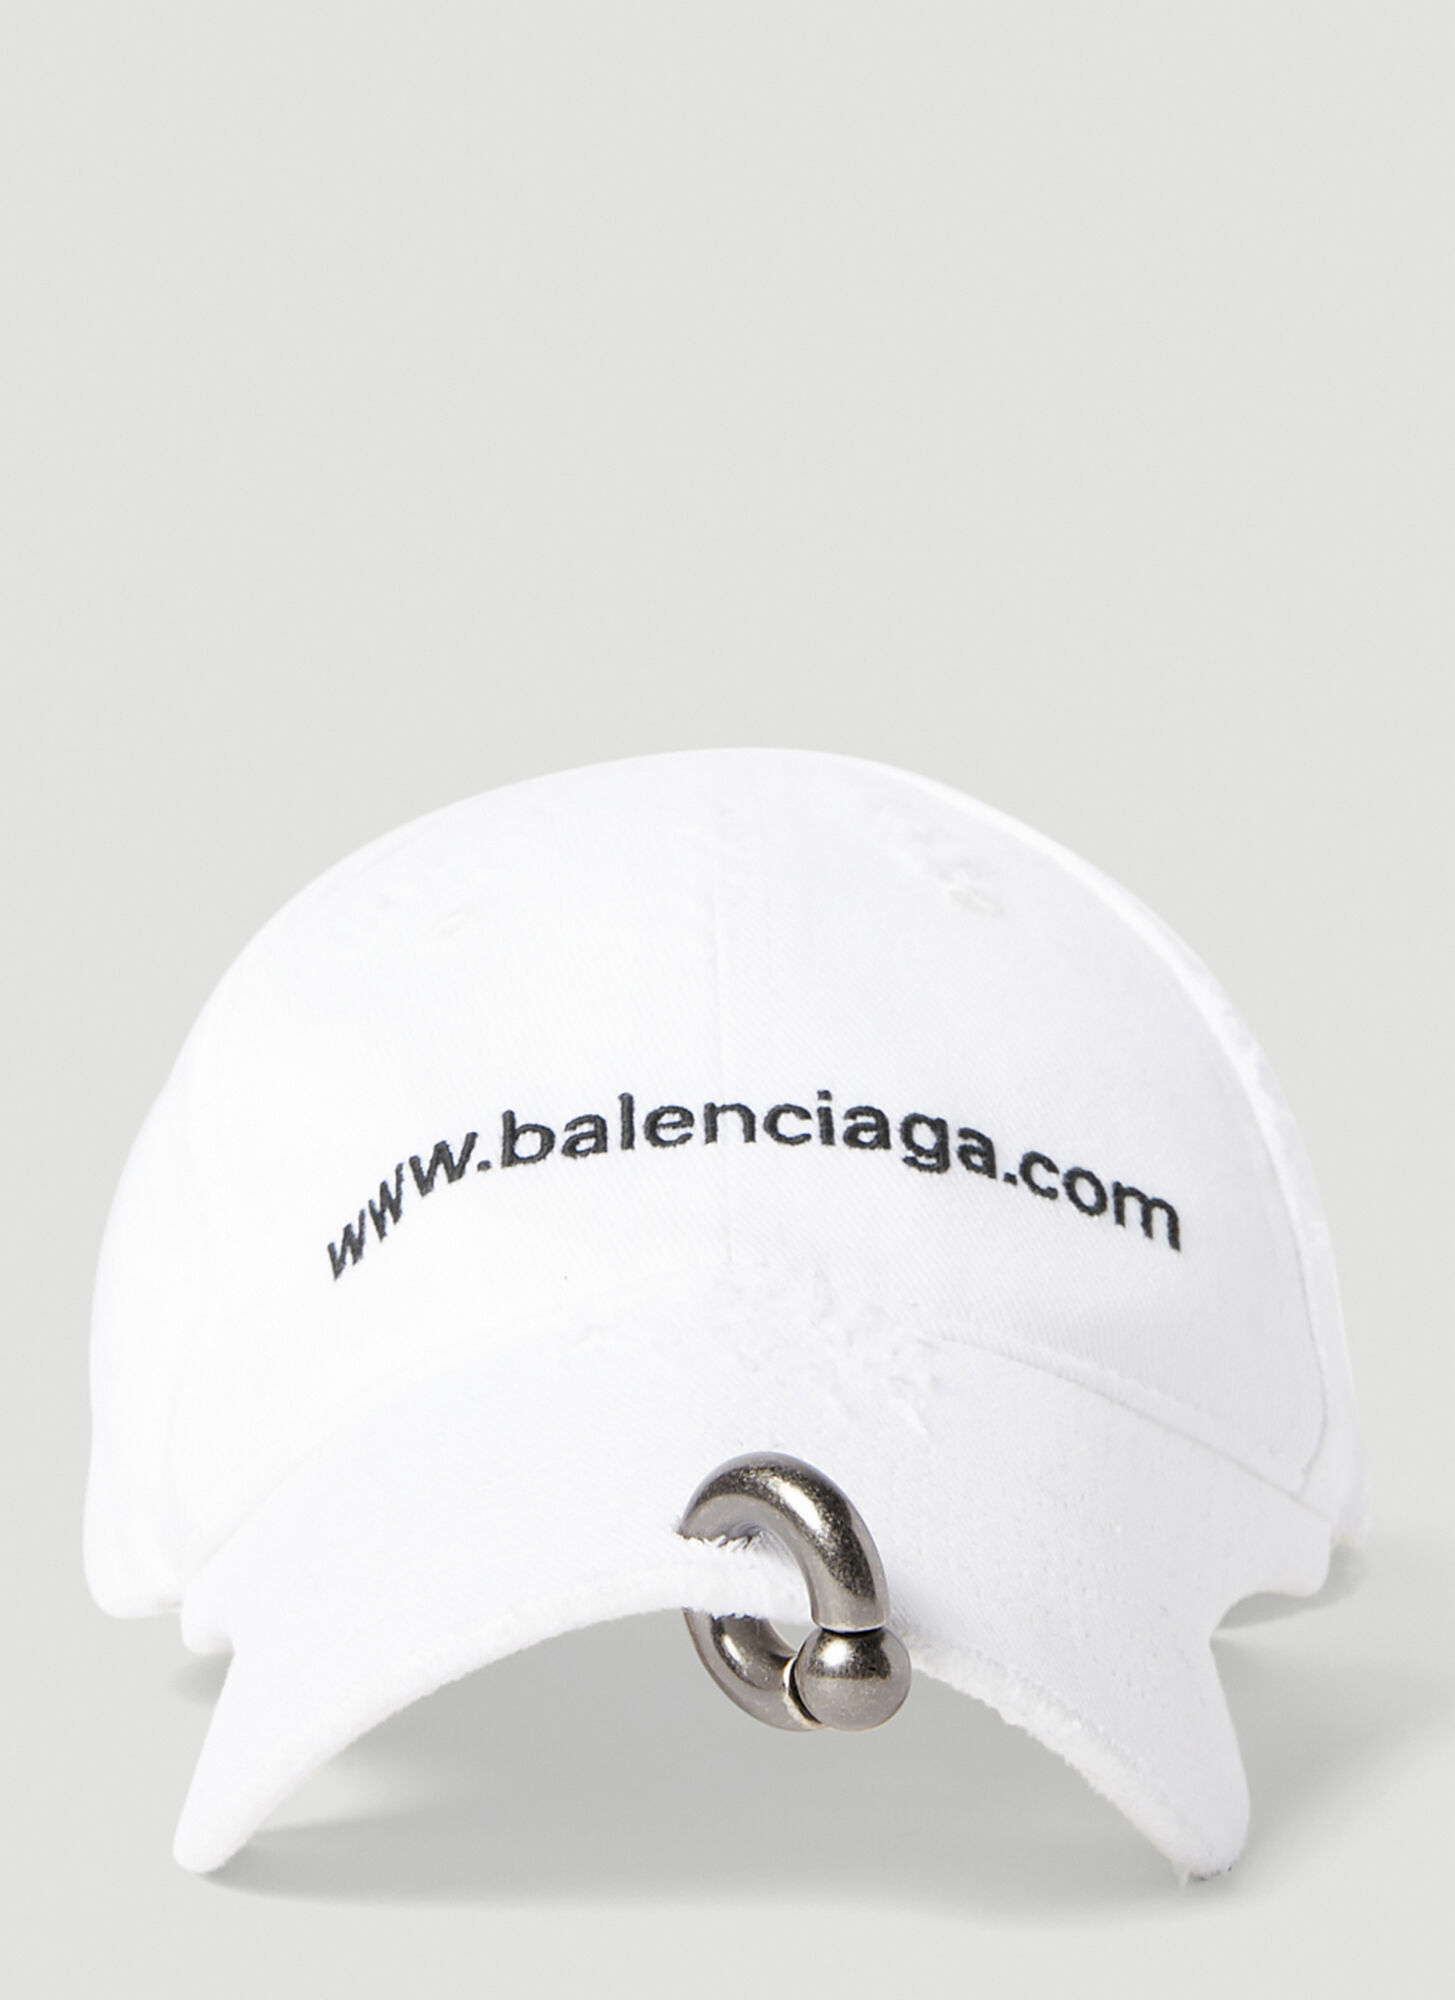 BALENCIAGA POLITICAL CAMPAIGN BASEBALL CAP